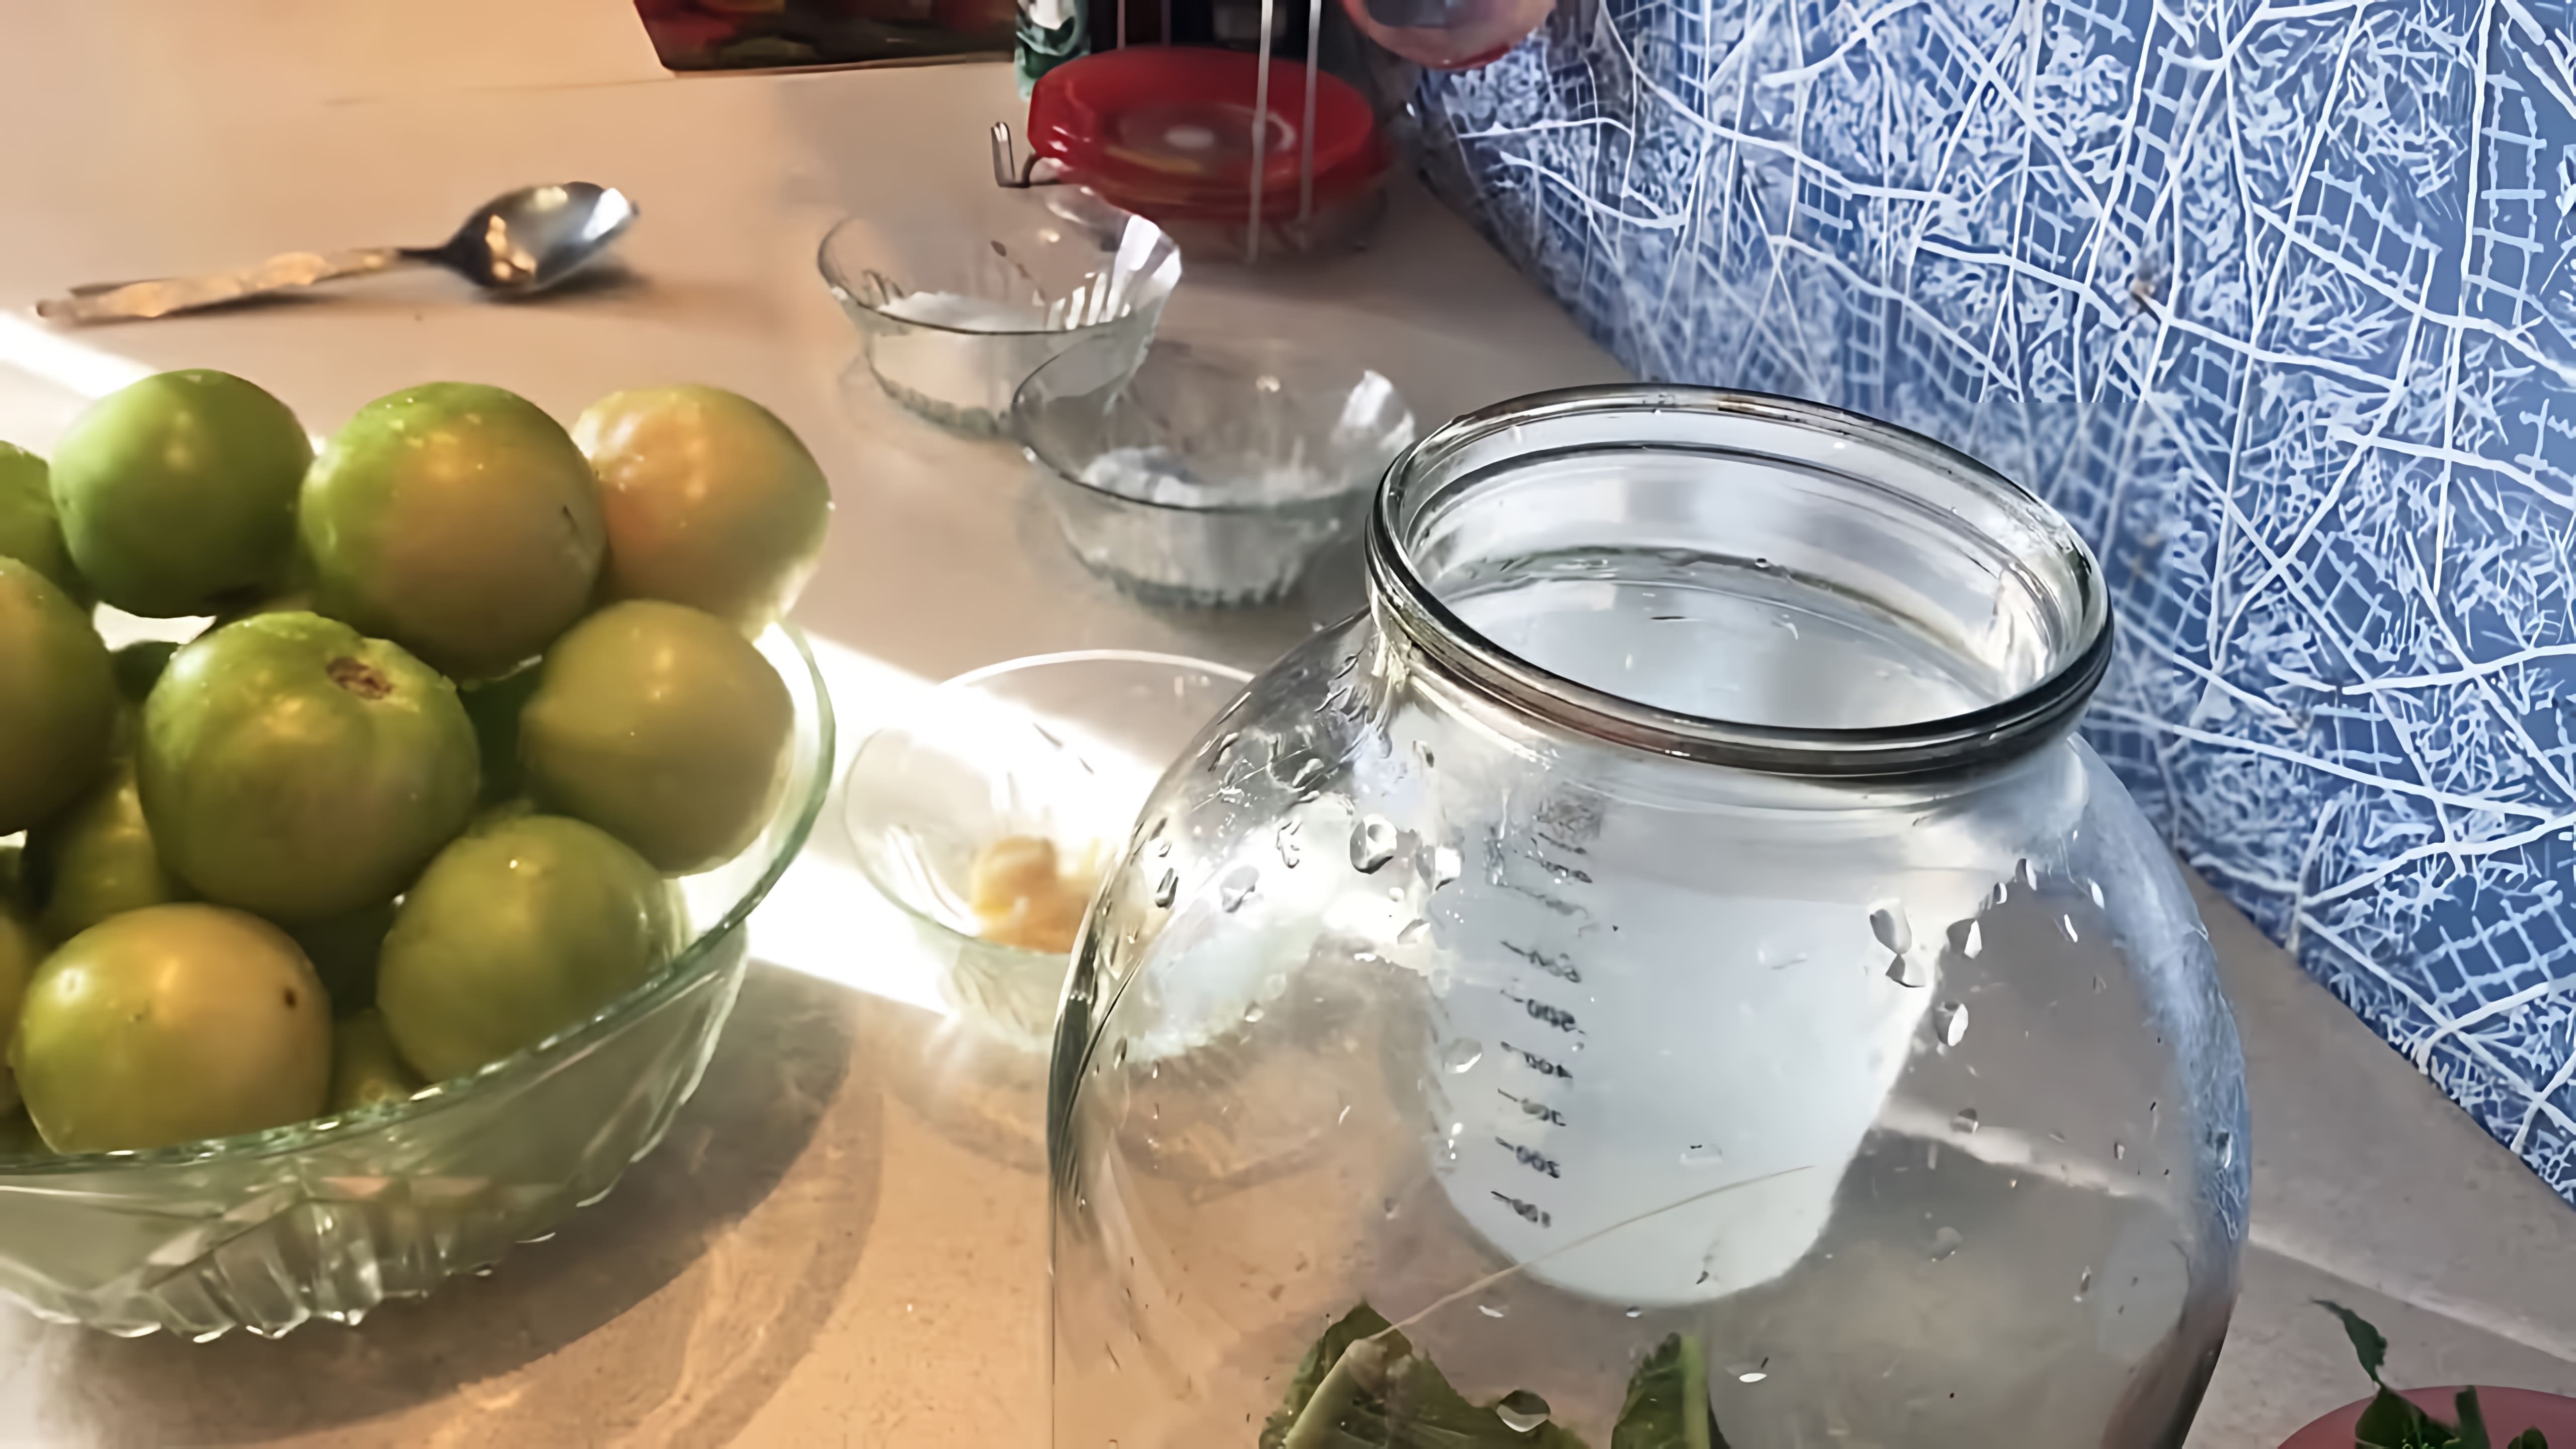 "Самый идеальный рецепт солёных зелёных помидор, как из бочки" - это видео-ролик, который демонстрирует процесс приготовления вкусных и ароматных солёных зелёных помидор